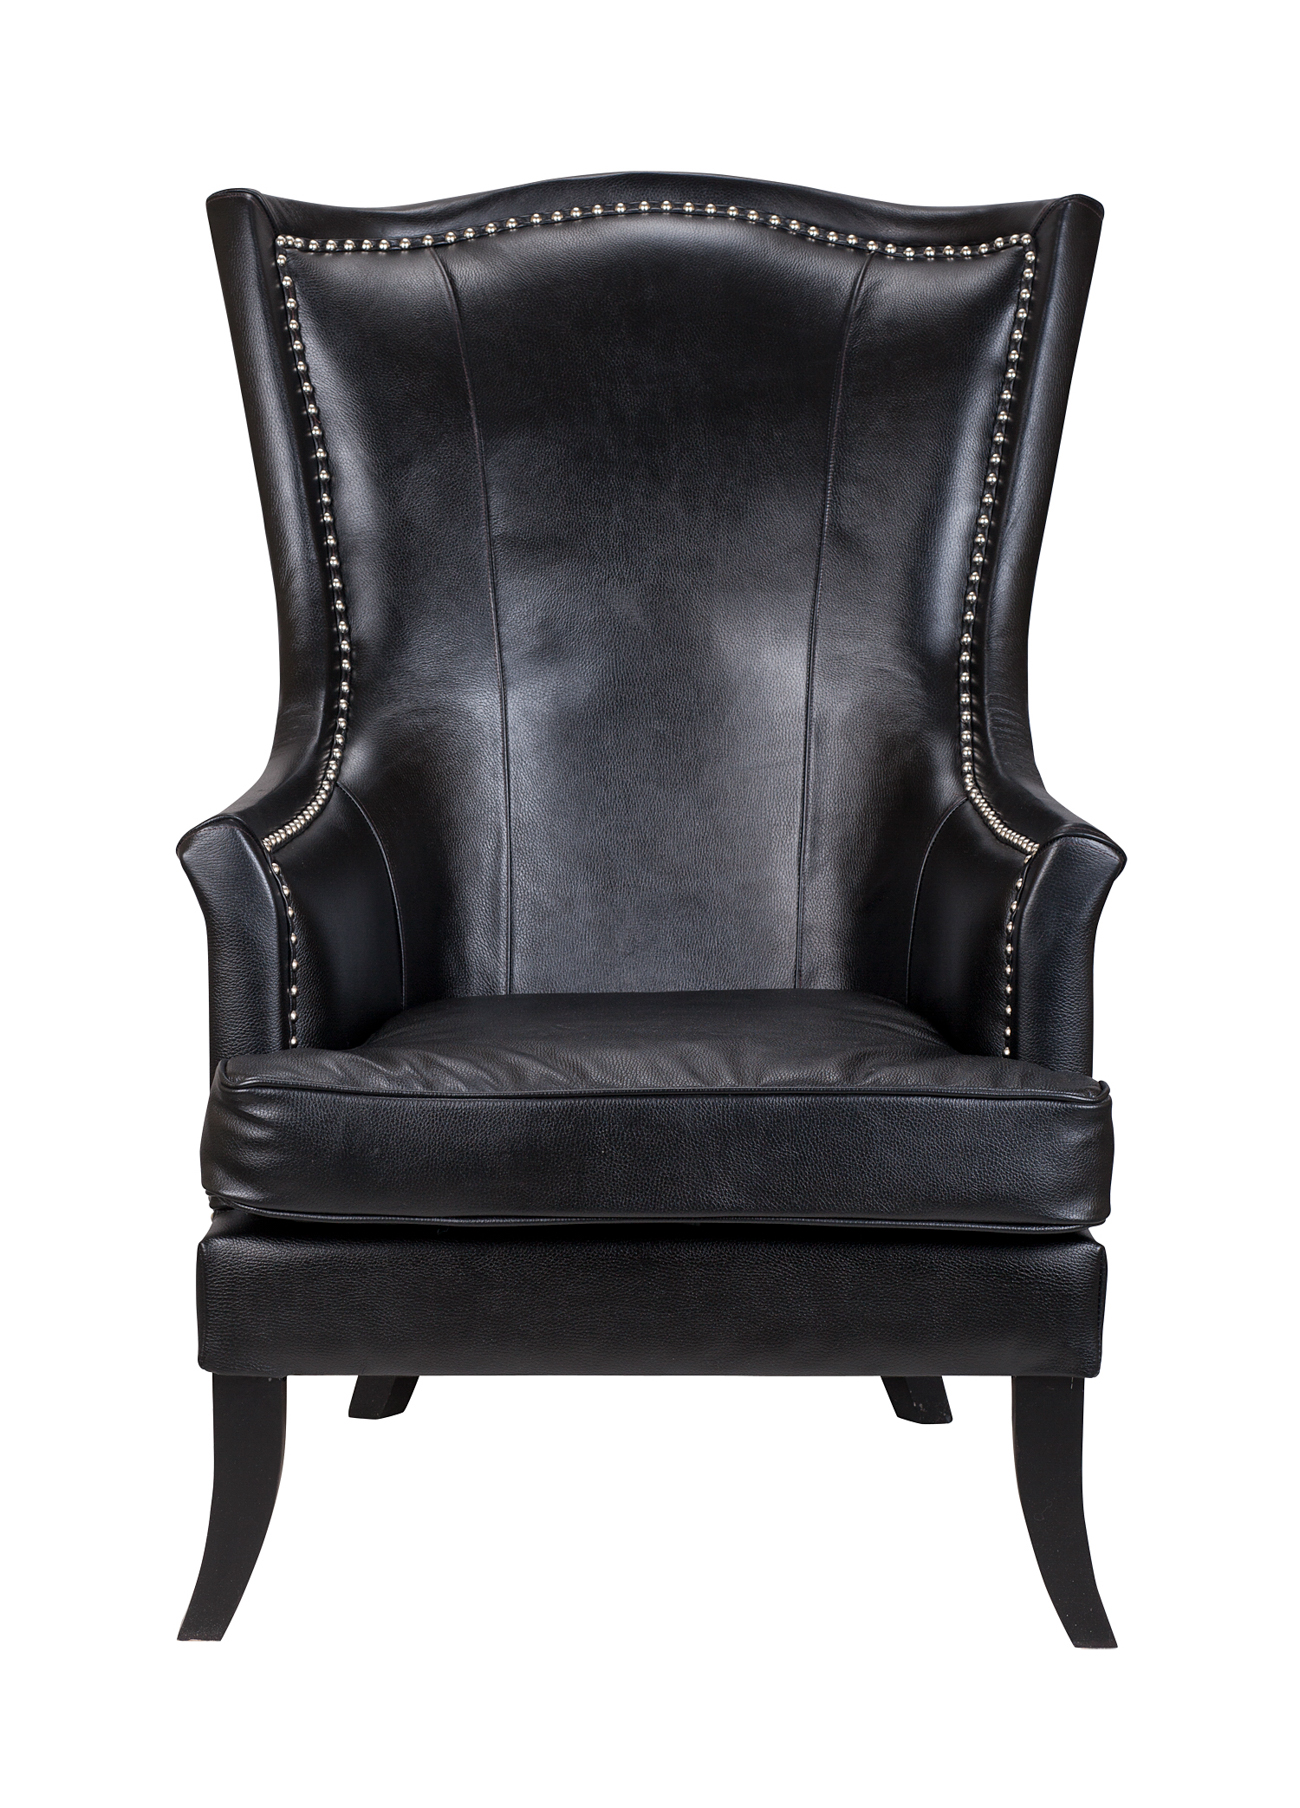 Дизайнерские кресла из кожи Chester black leather